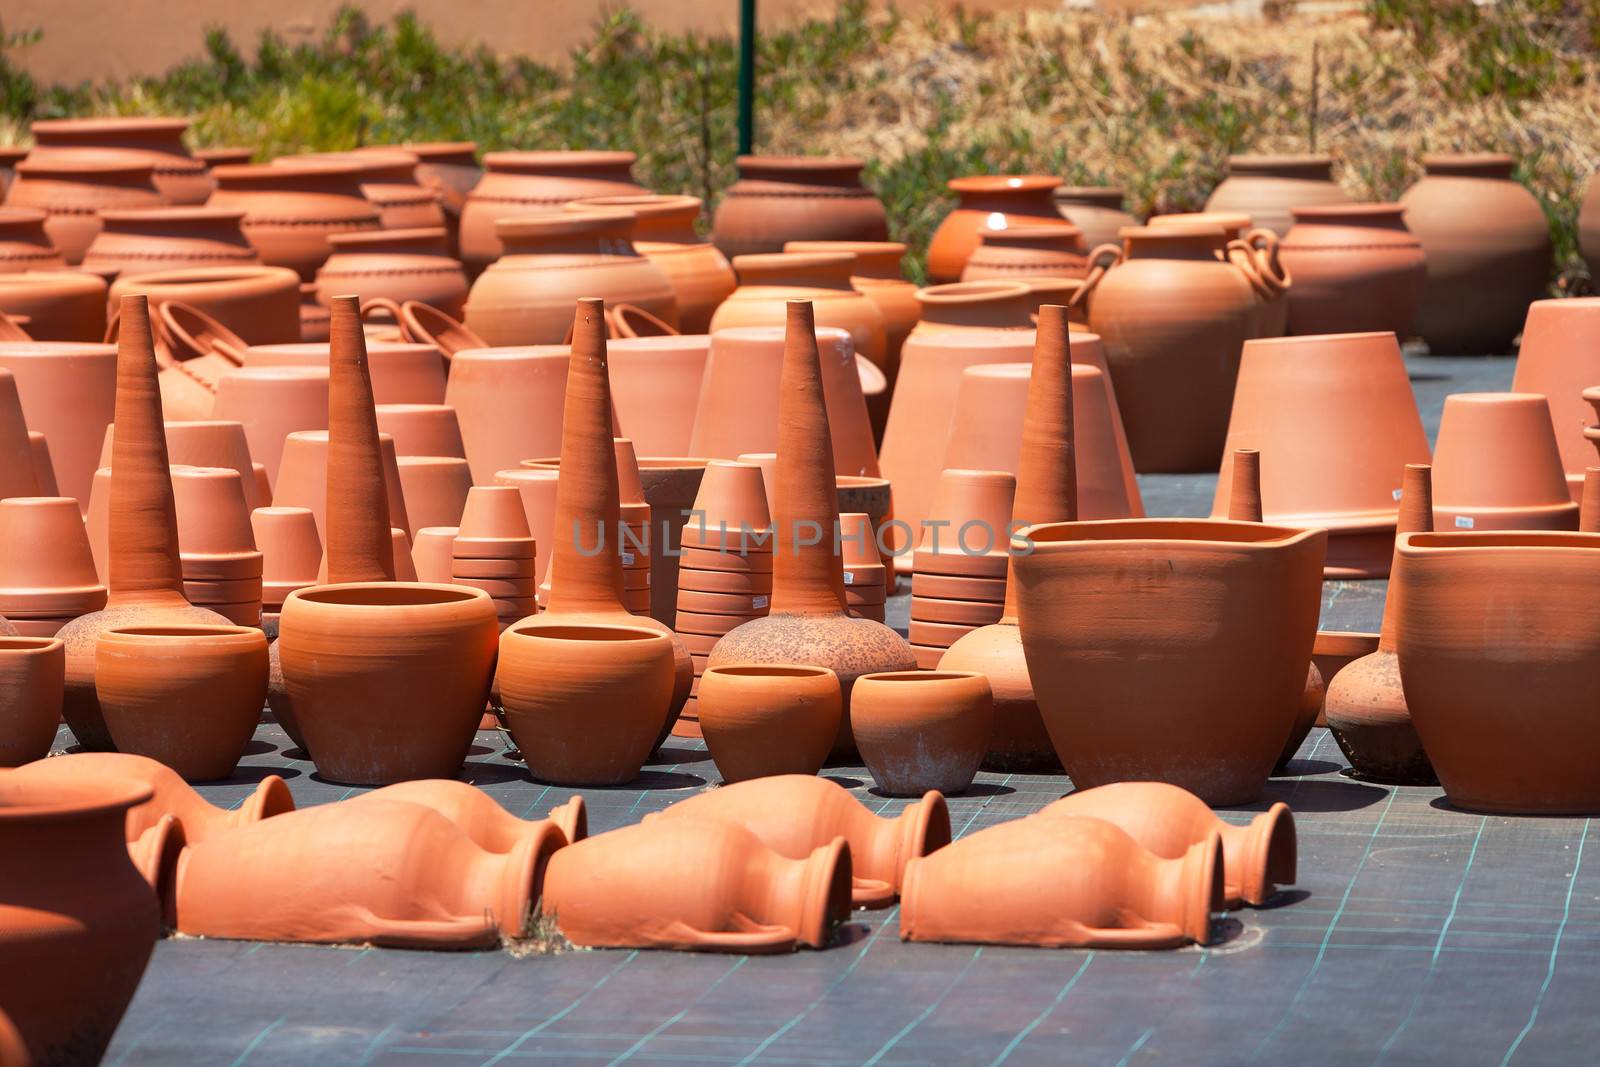 ceramic pots in market, sunny day